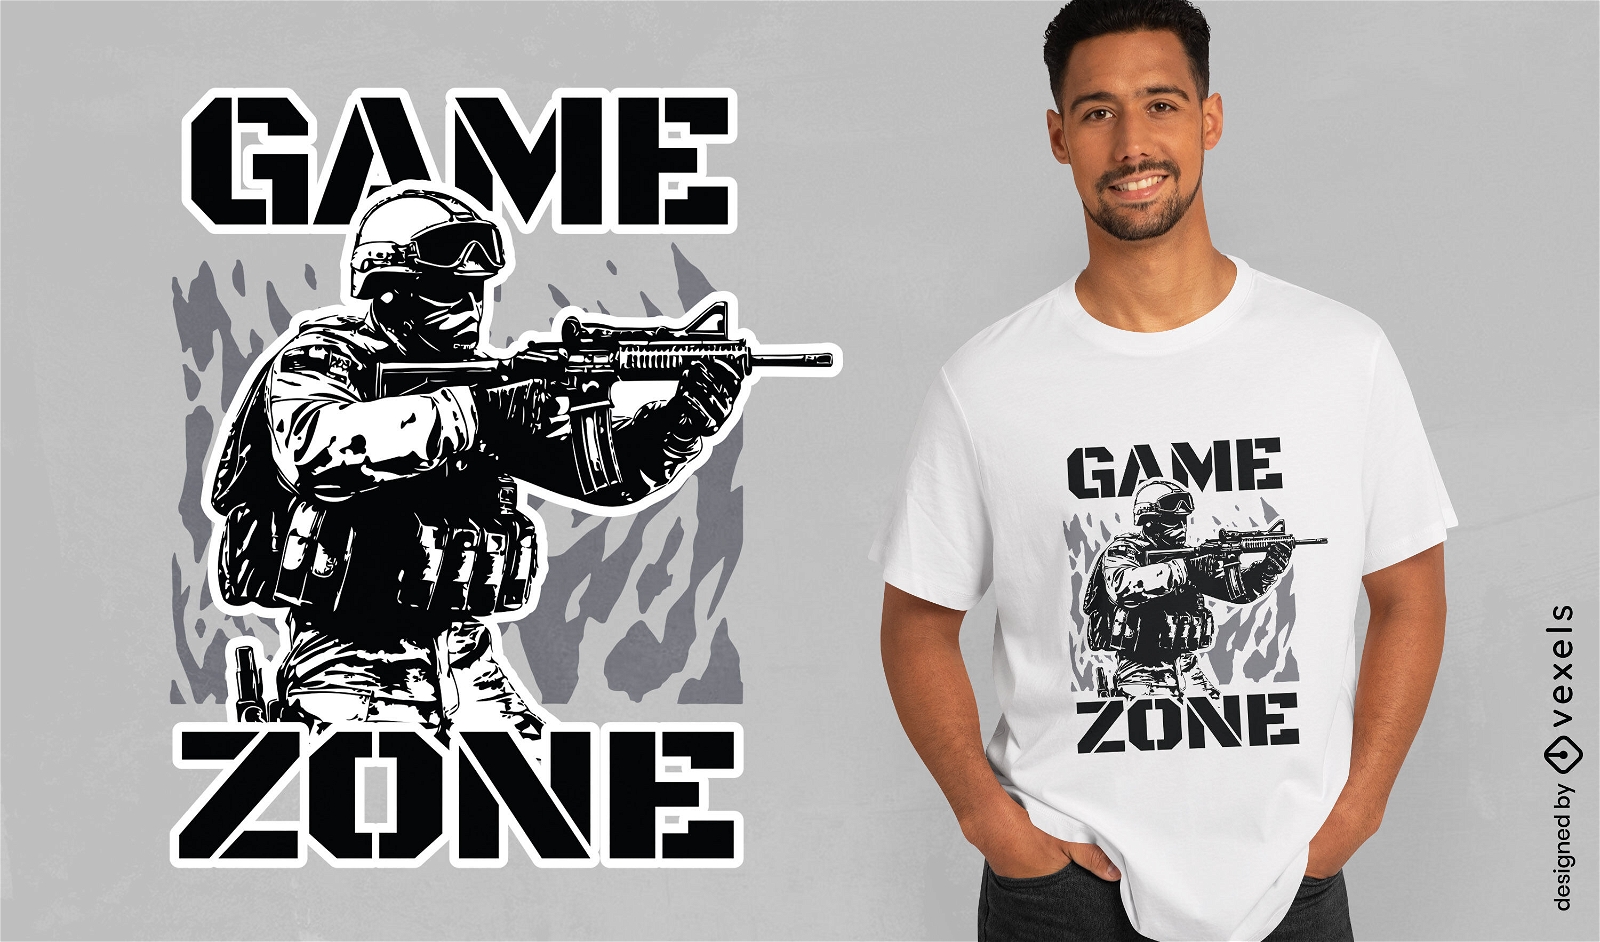 Dise?o de camiseta de zona de juego de hombre militar.